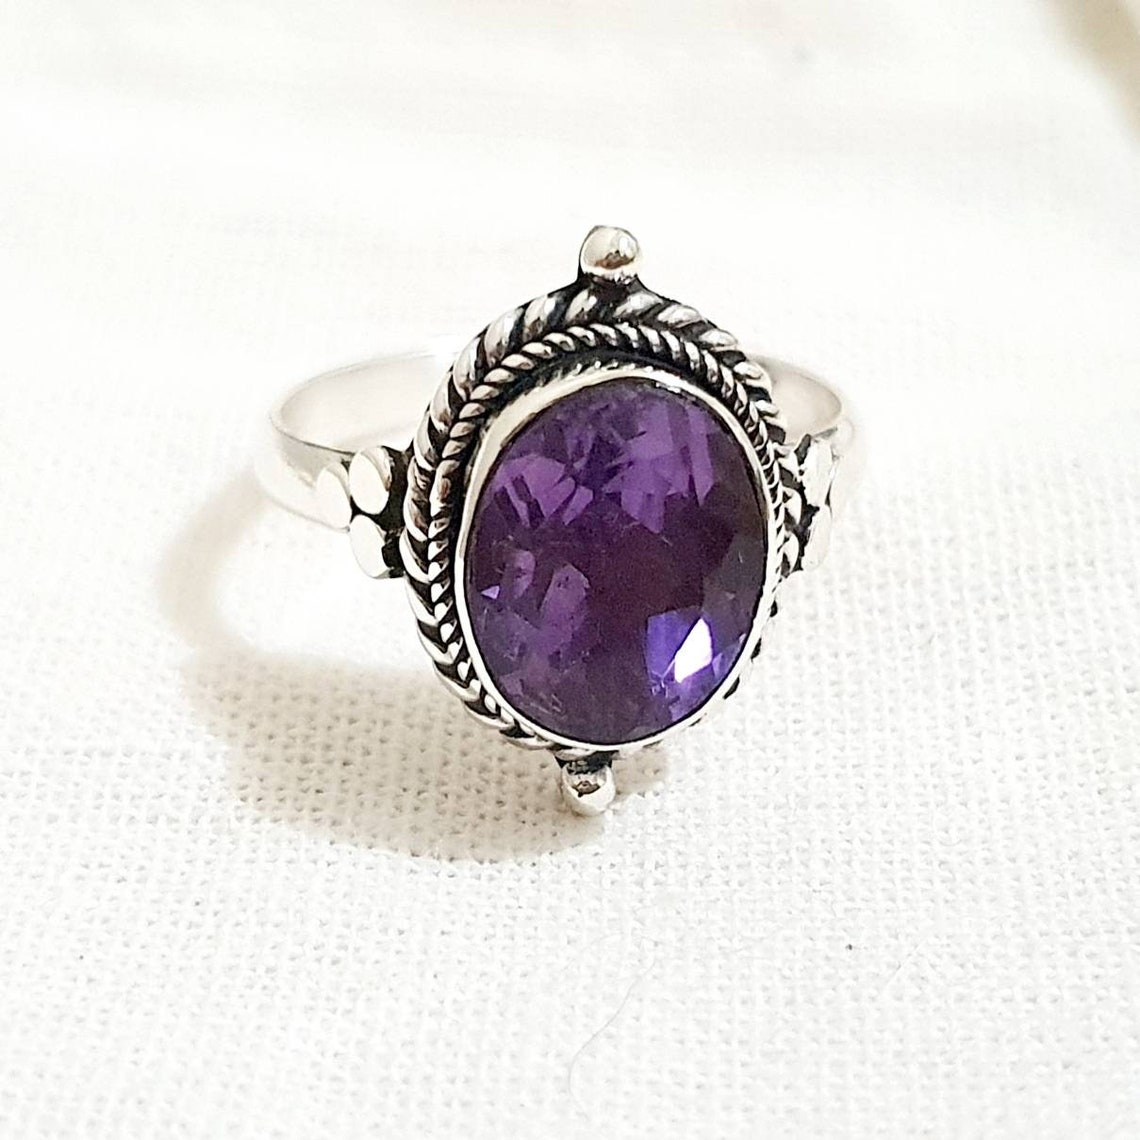 Blue Safir Ring engagement ring best gift for mom wedding | Etsy